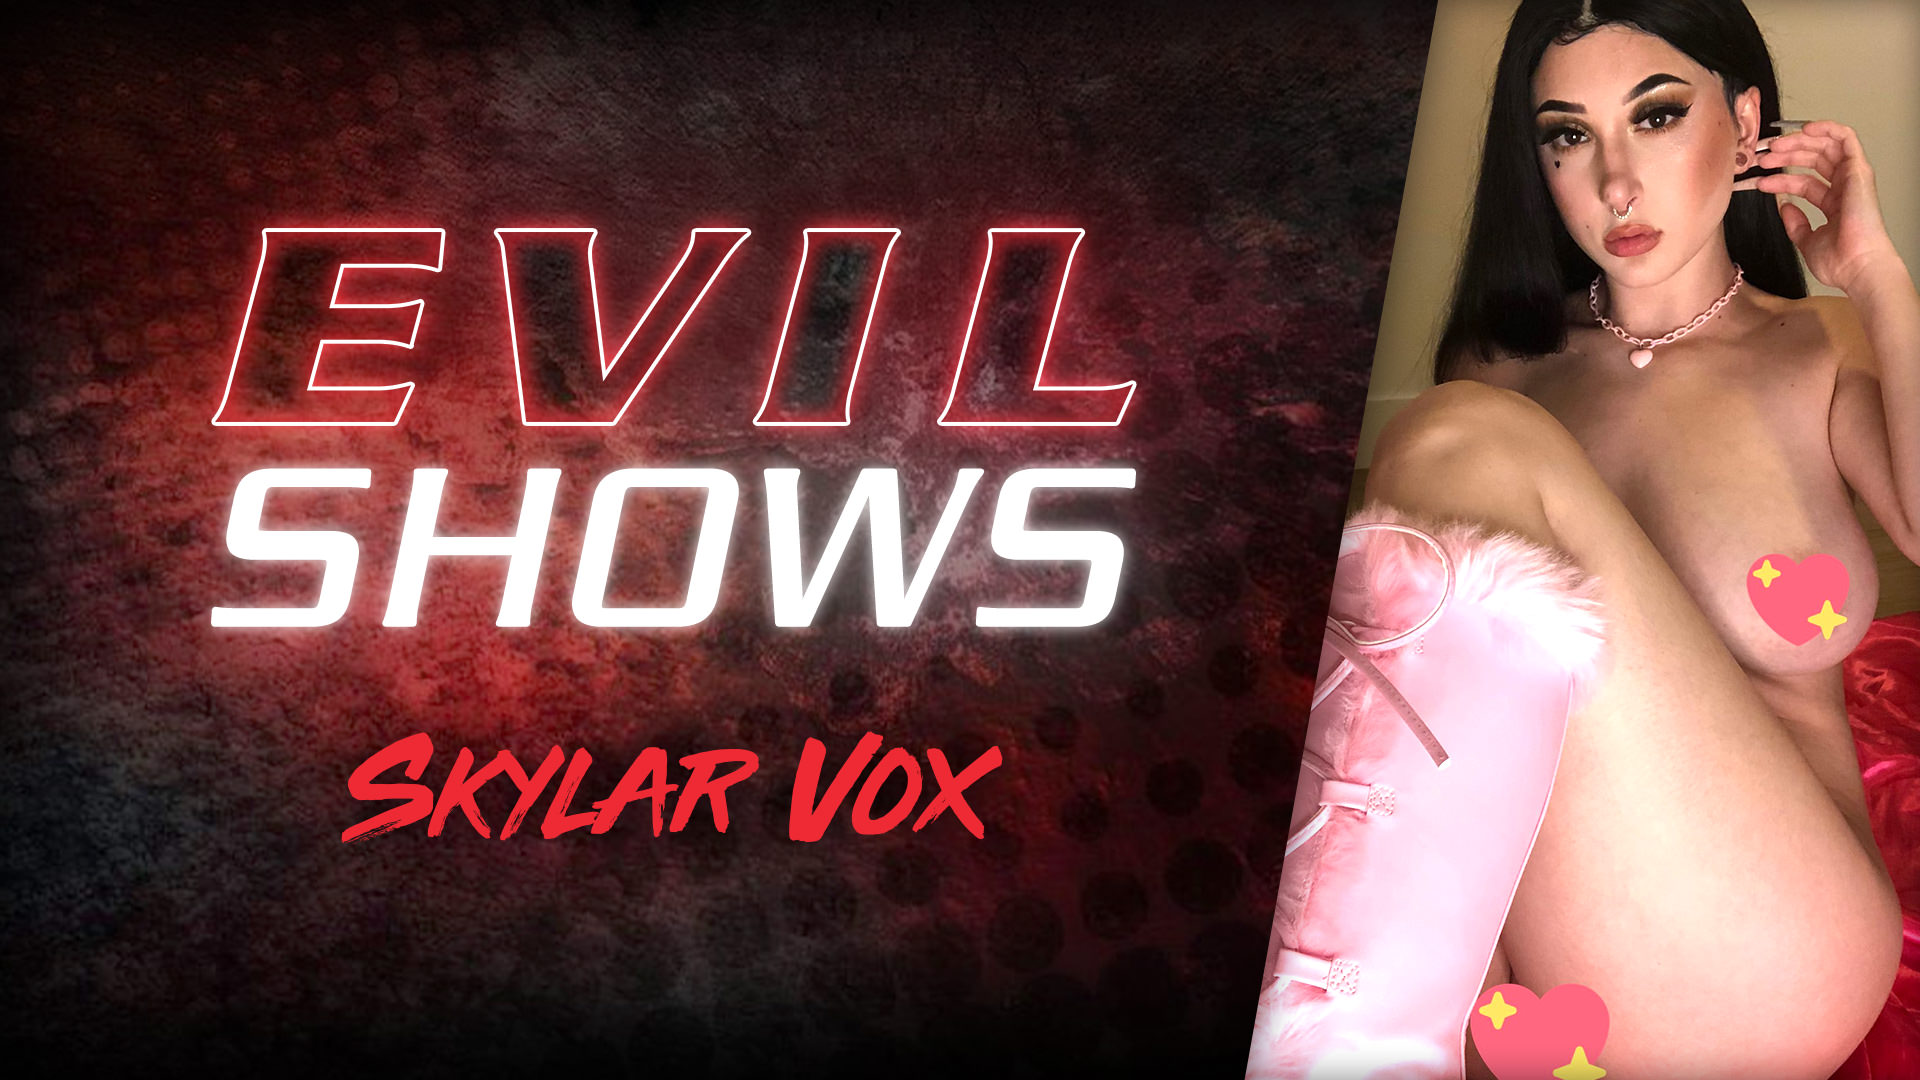 Evil Shows - Skylar Vox Scena 1